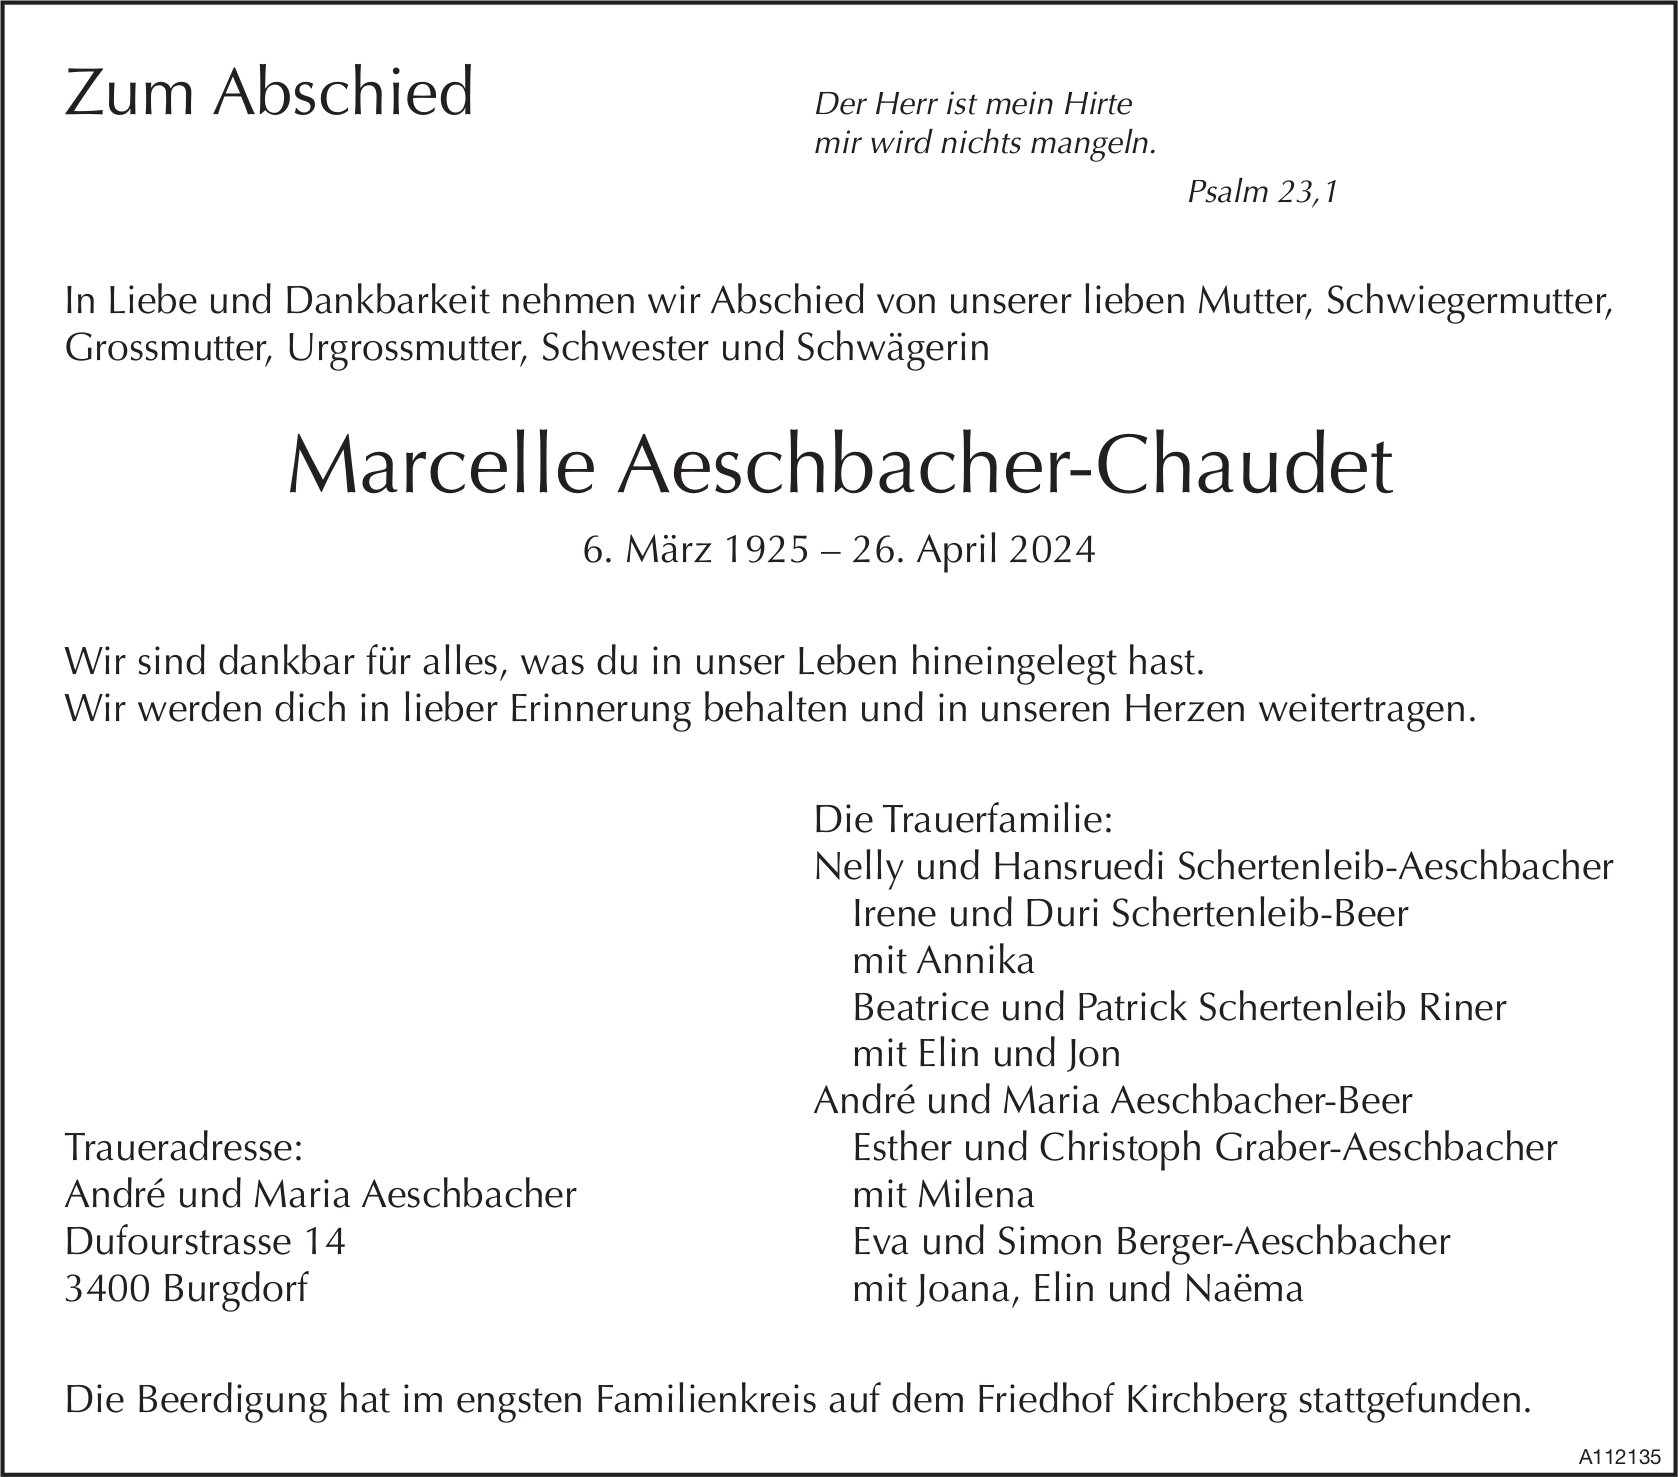 Marcelle Aeschbacher-Chaudet, April 2024 / TA